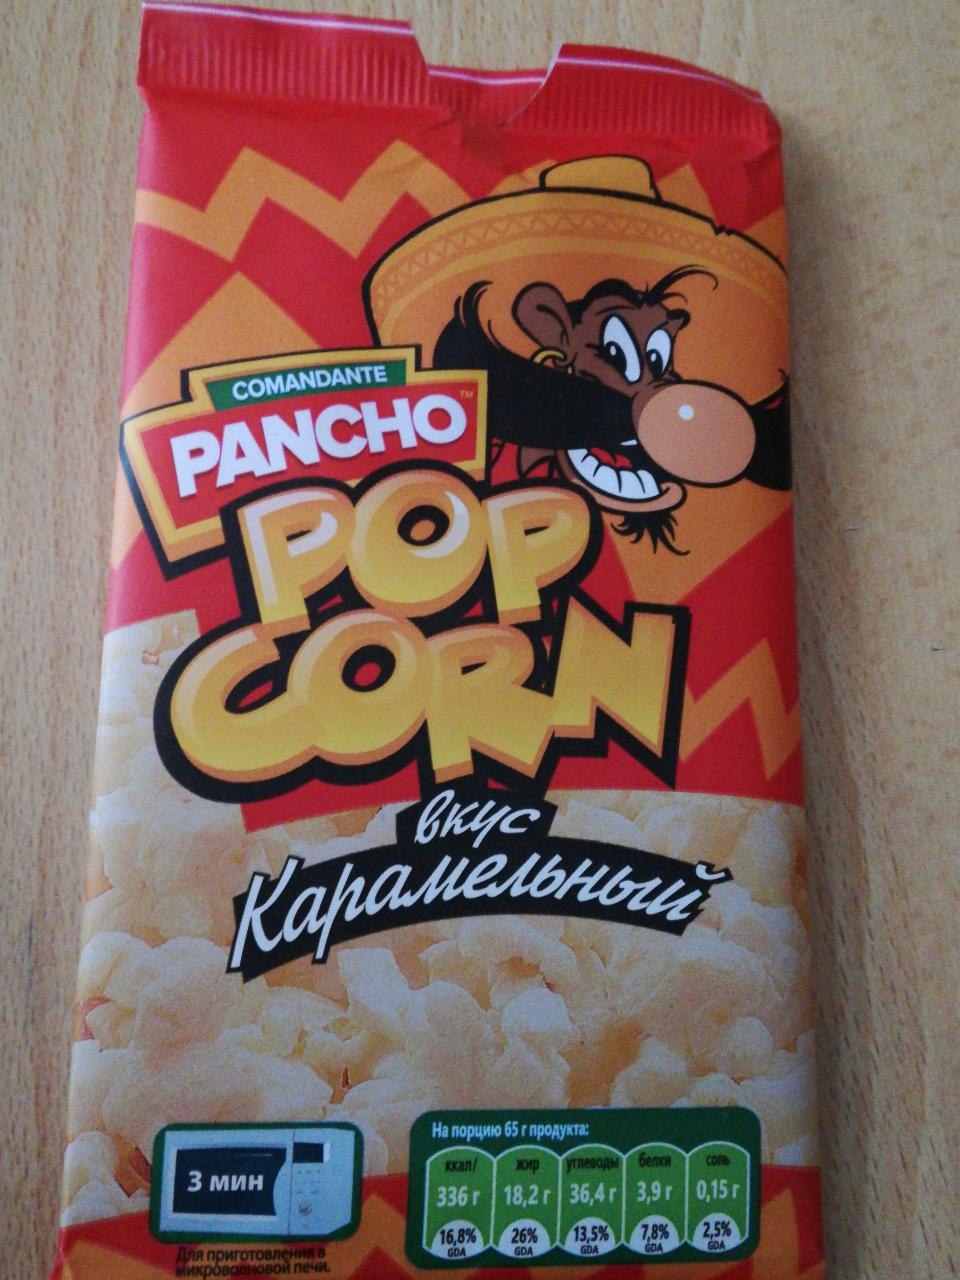 Фото - Pop Corn вкус карамельный Comandante Pancho